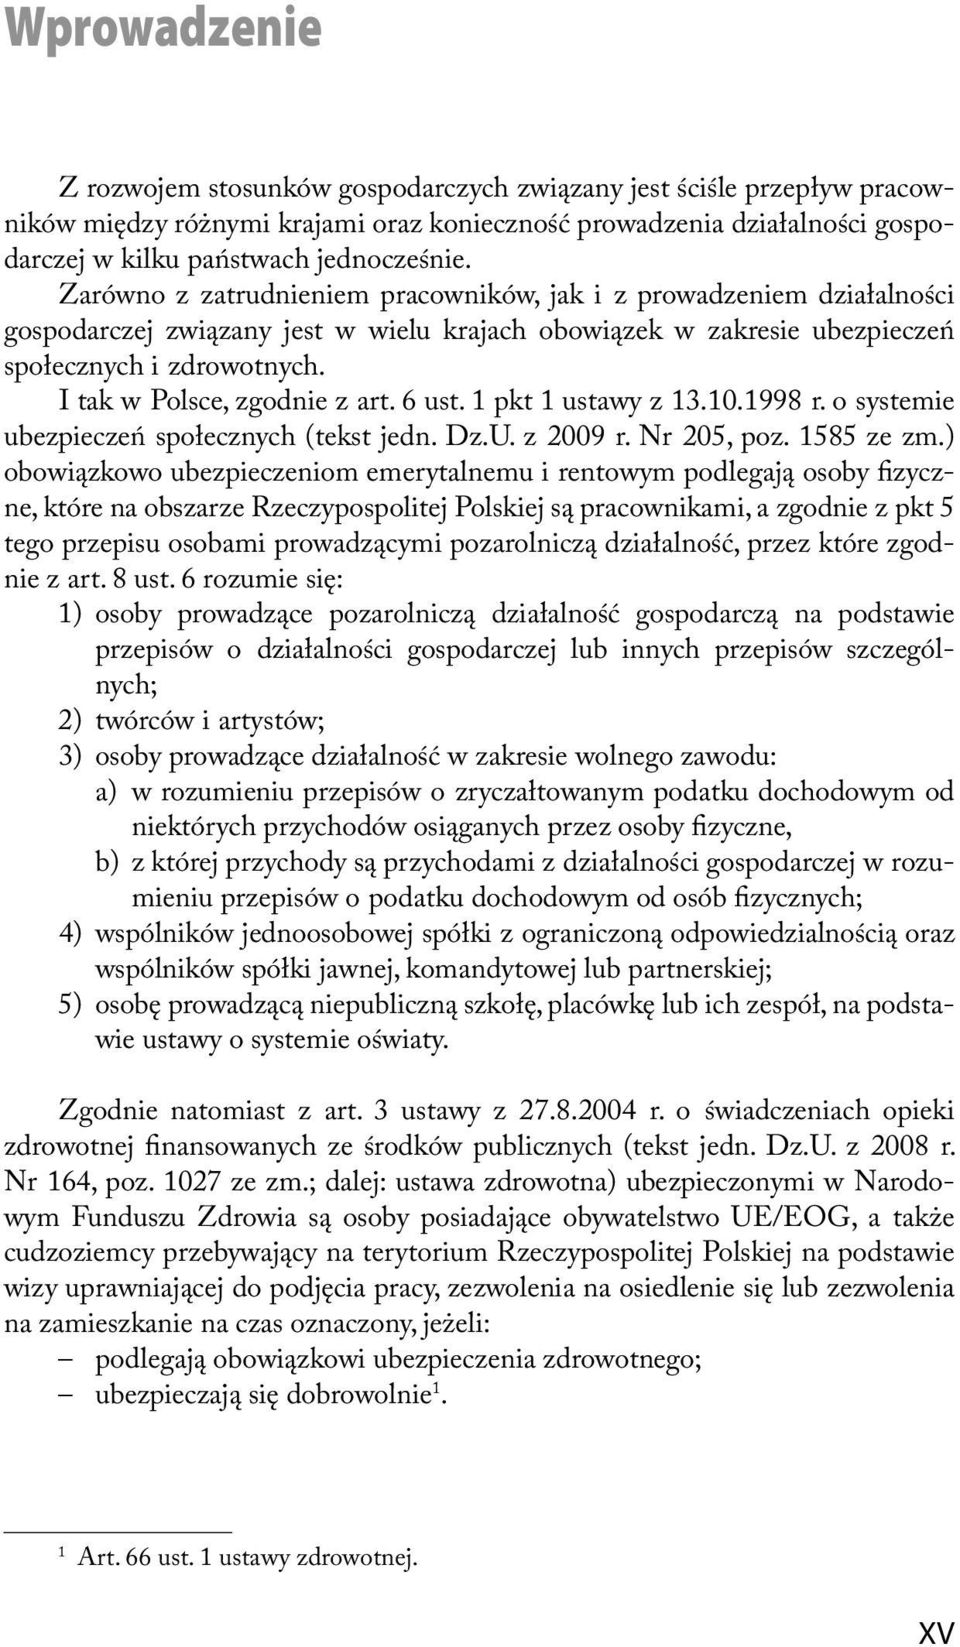 I tak w Polsce, zgodnie z art. 6 ust. 1 pkt 1 ustawy z 13.10.1998 r. o systemie ubezpieczeń społecznych (tekst jedn. Dz.U. z 2009 r. Nr 205, poz. 1585 ze zm.